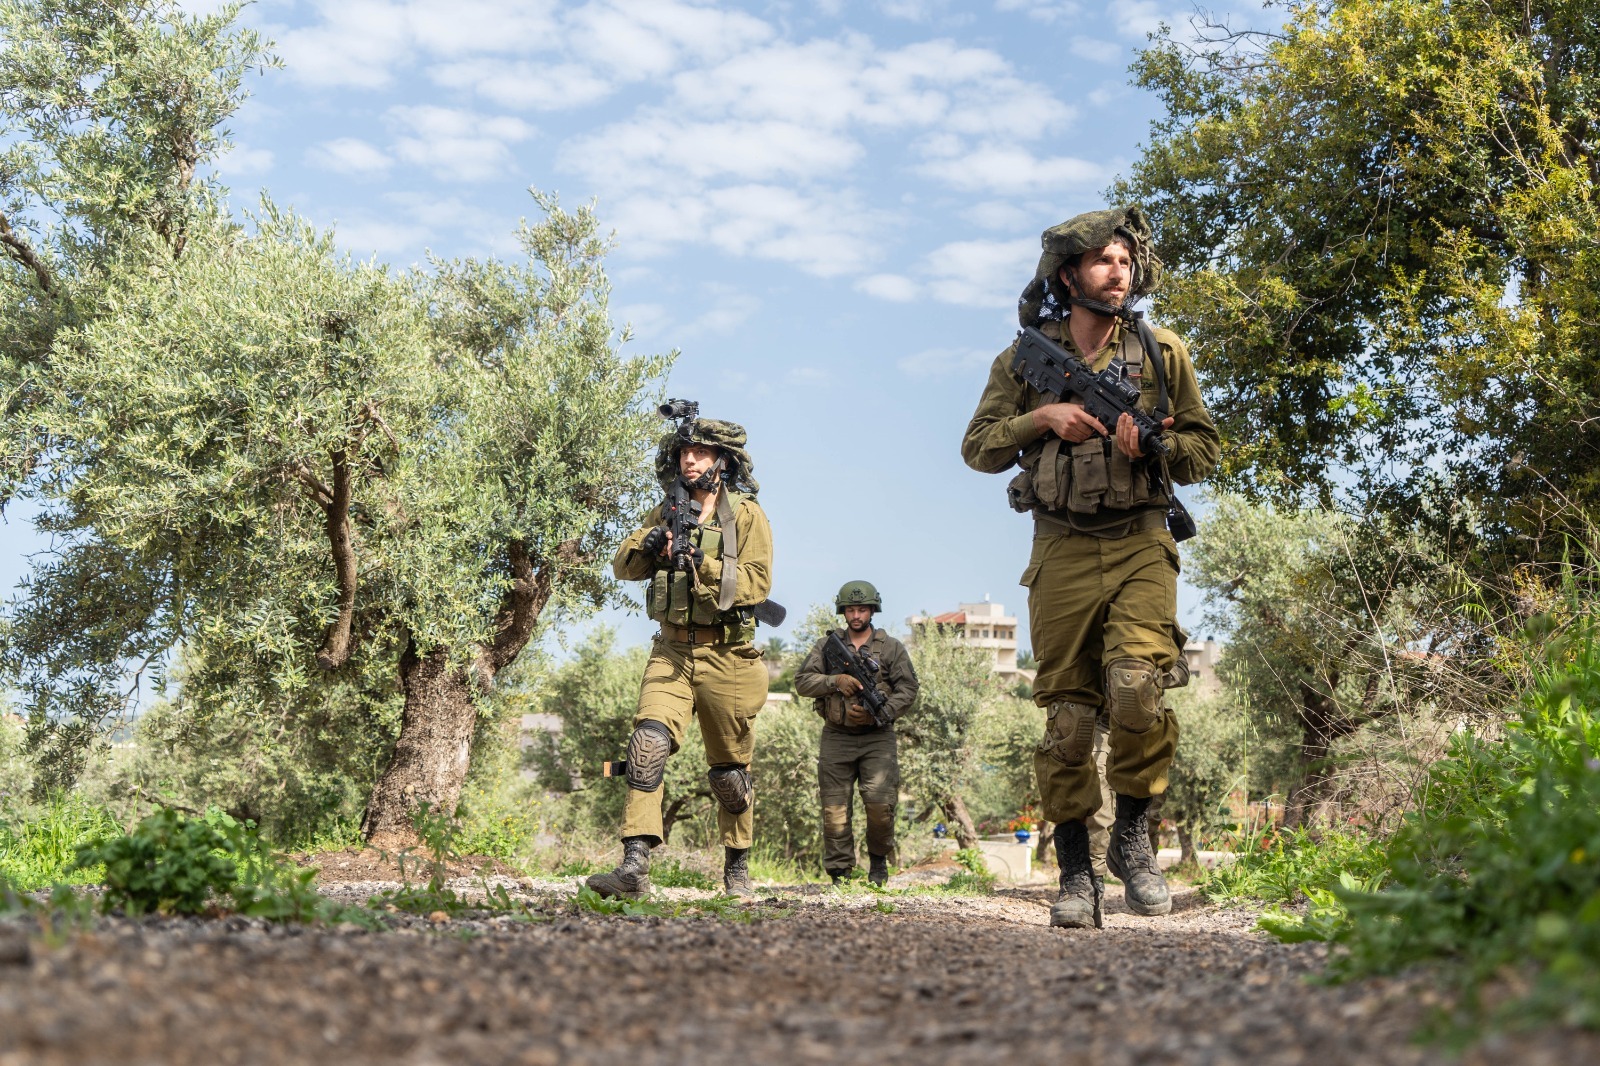 ألوية احتياط جديدة تدخل الخدمة في الجيش الإسرائيلي